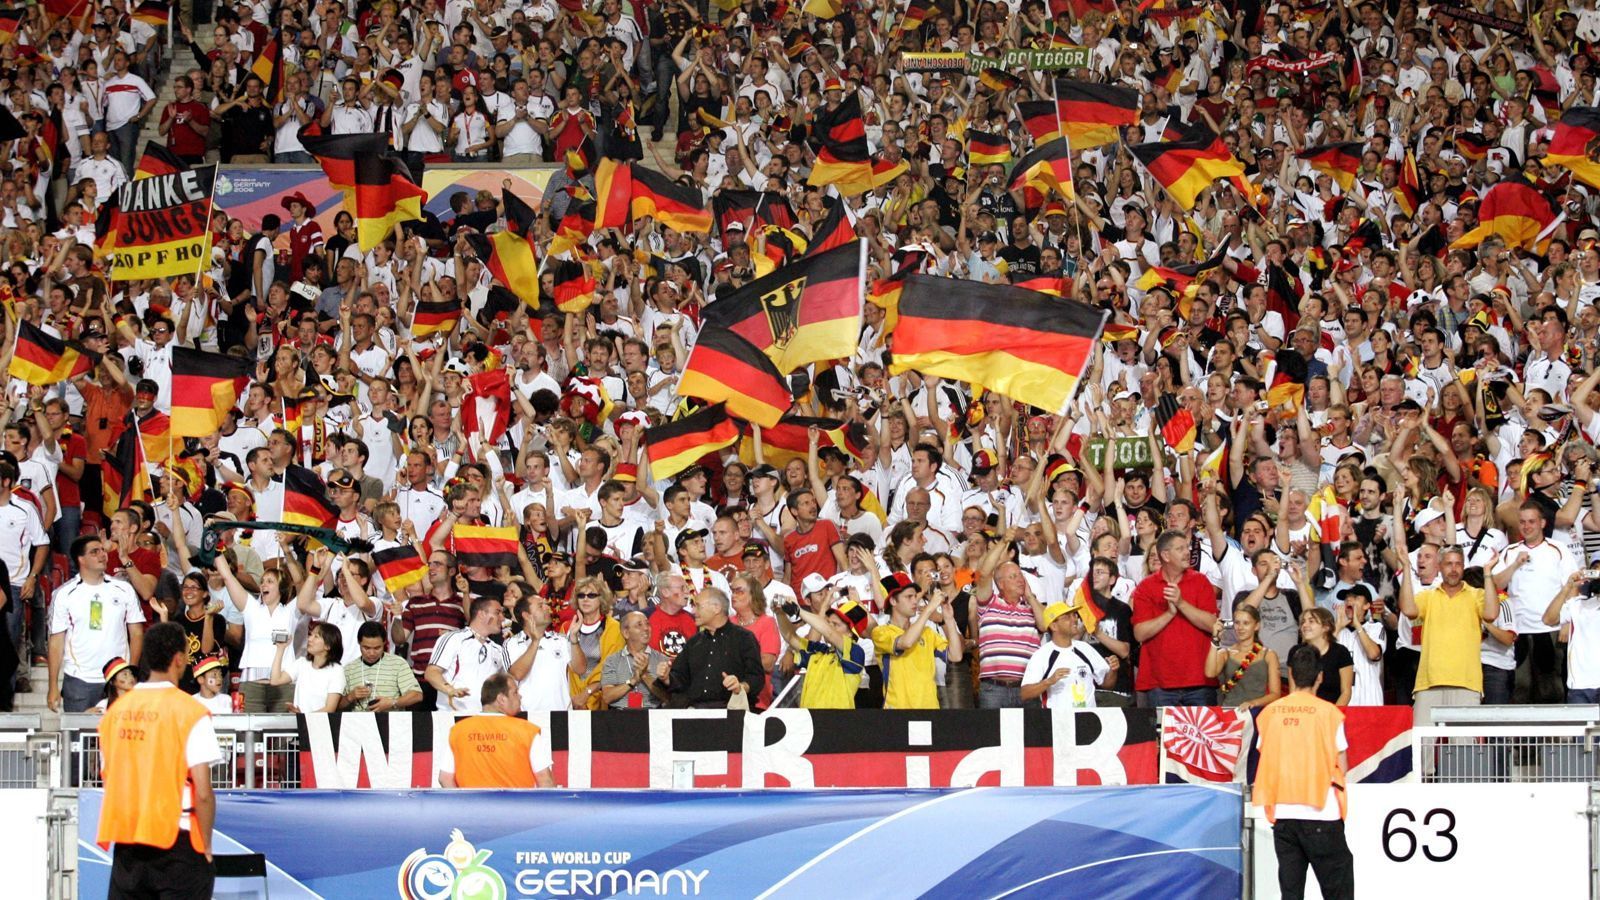 
                <strong>Die deutschen Fans pushen die Mannschaft</strong><br>
                Die deutschen Fans unterstützen ihr Team bedingungslos und pushen die eigentlich eher durchschnittliche Mannschaft bis ins Halbfinale.
              